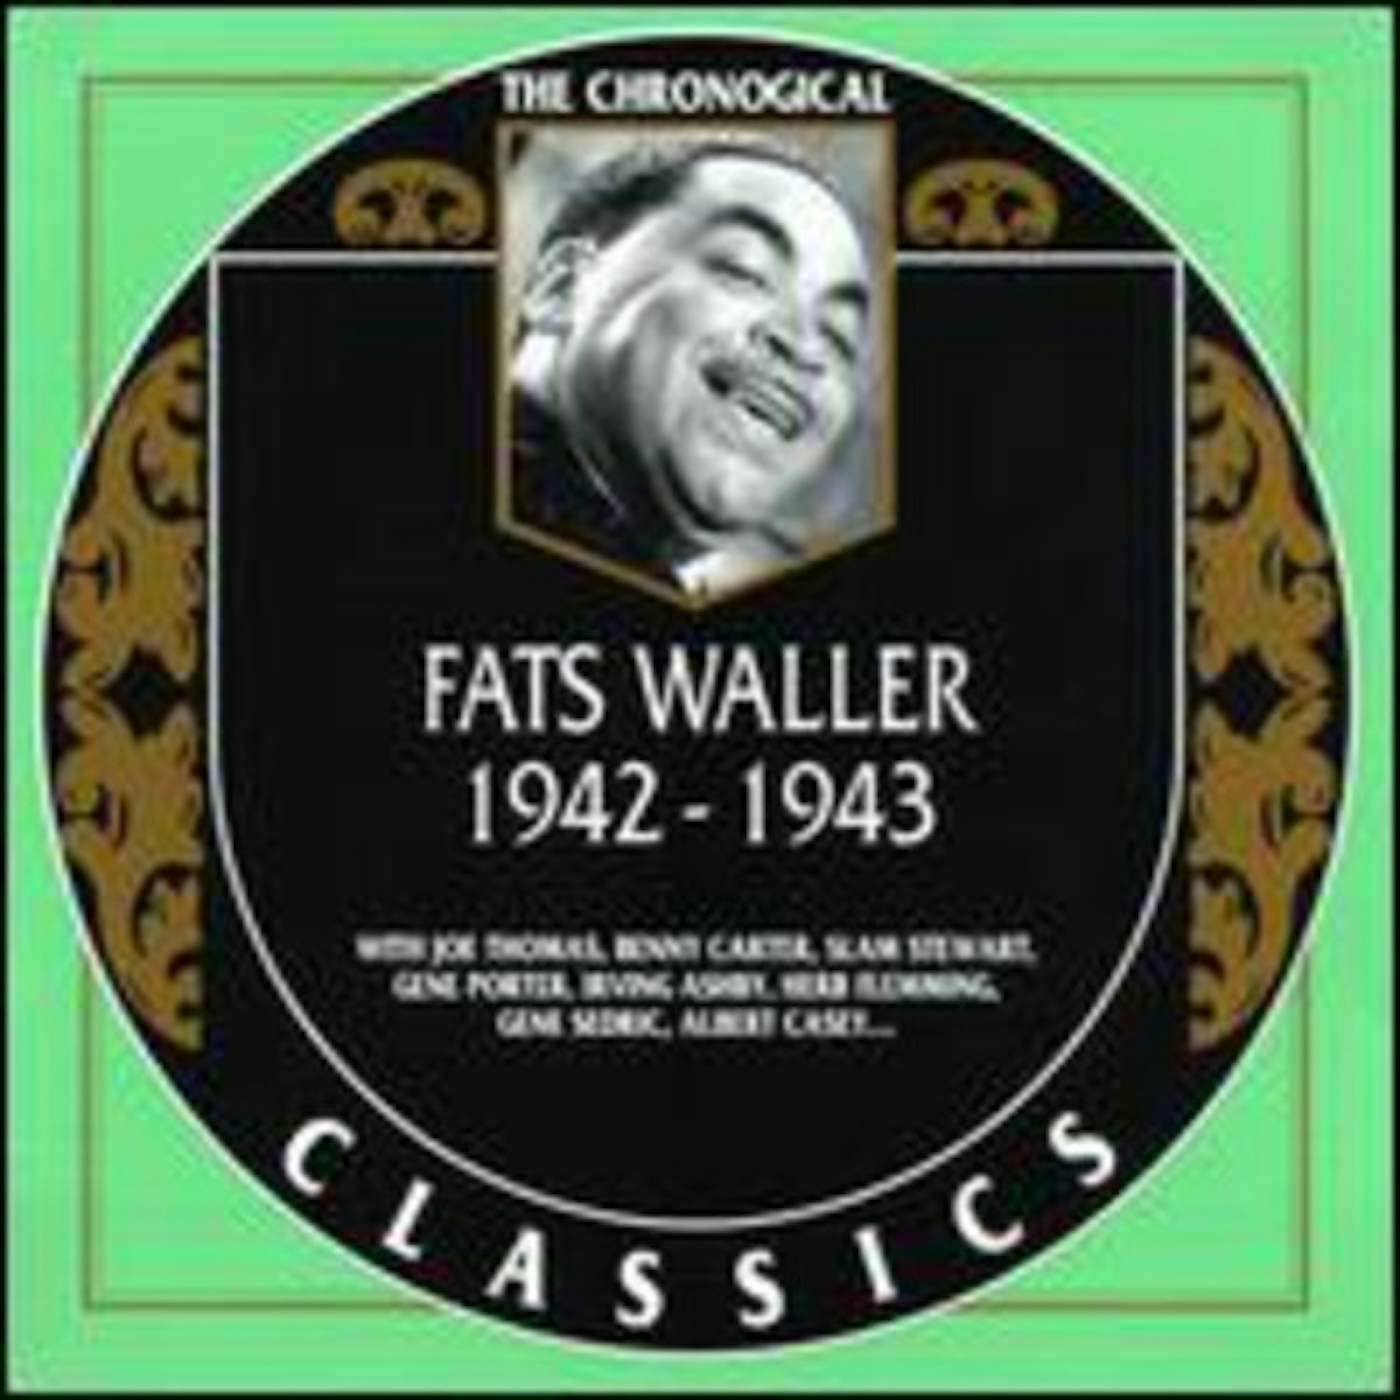 Fats Waller 1942-1943 CD